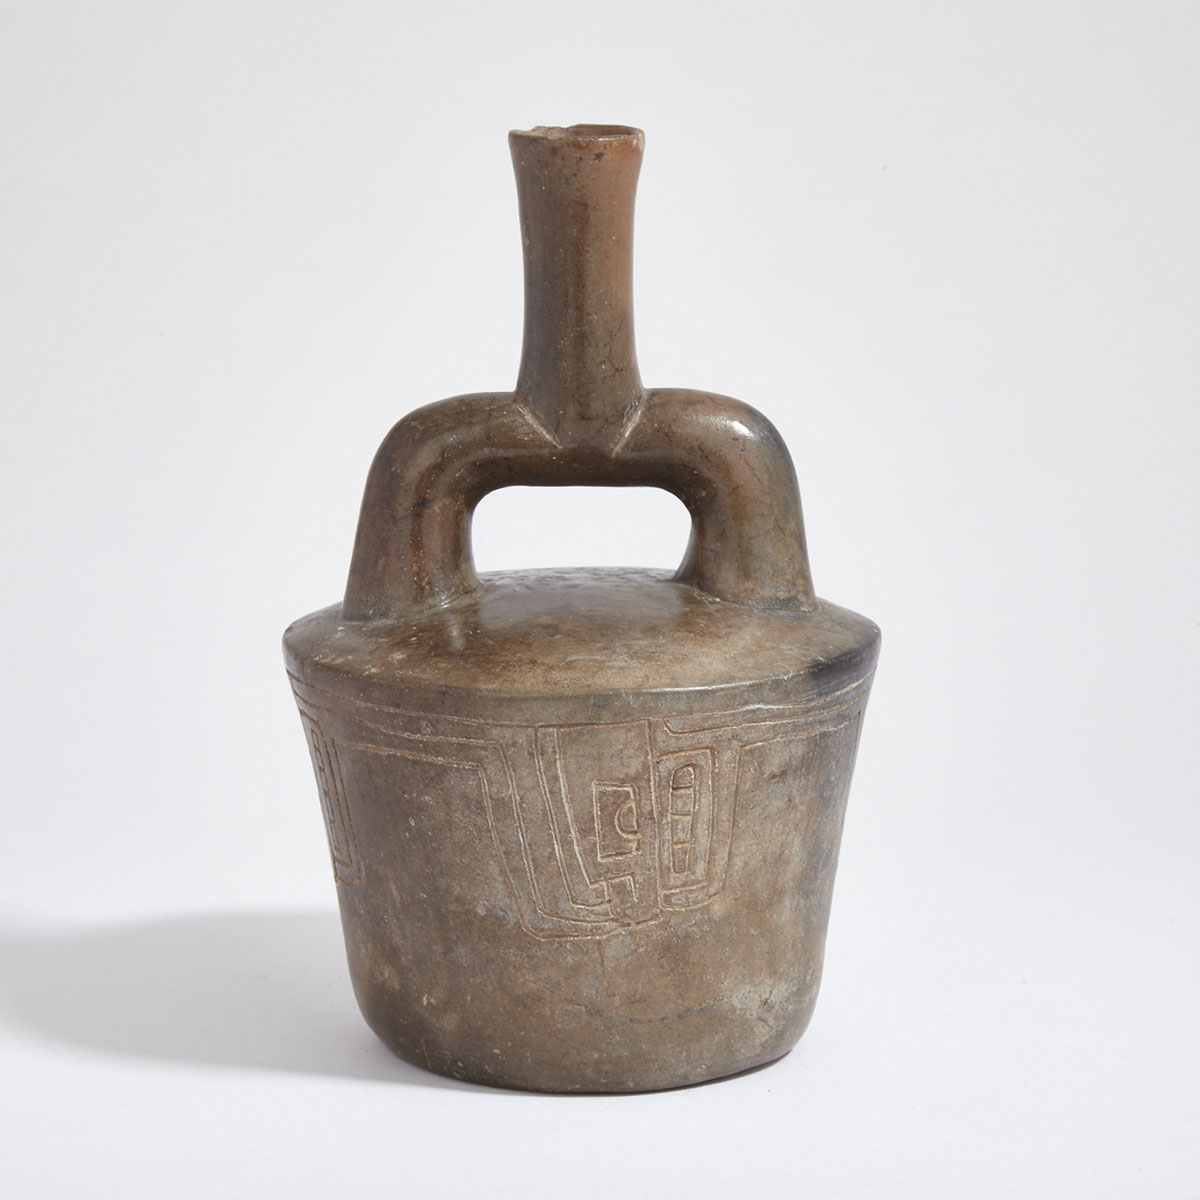 Stirrup Spout Pottery Vessel, possibly Chavin/Cupisnique, Peru